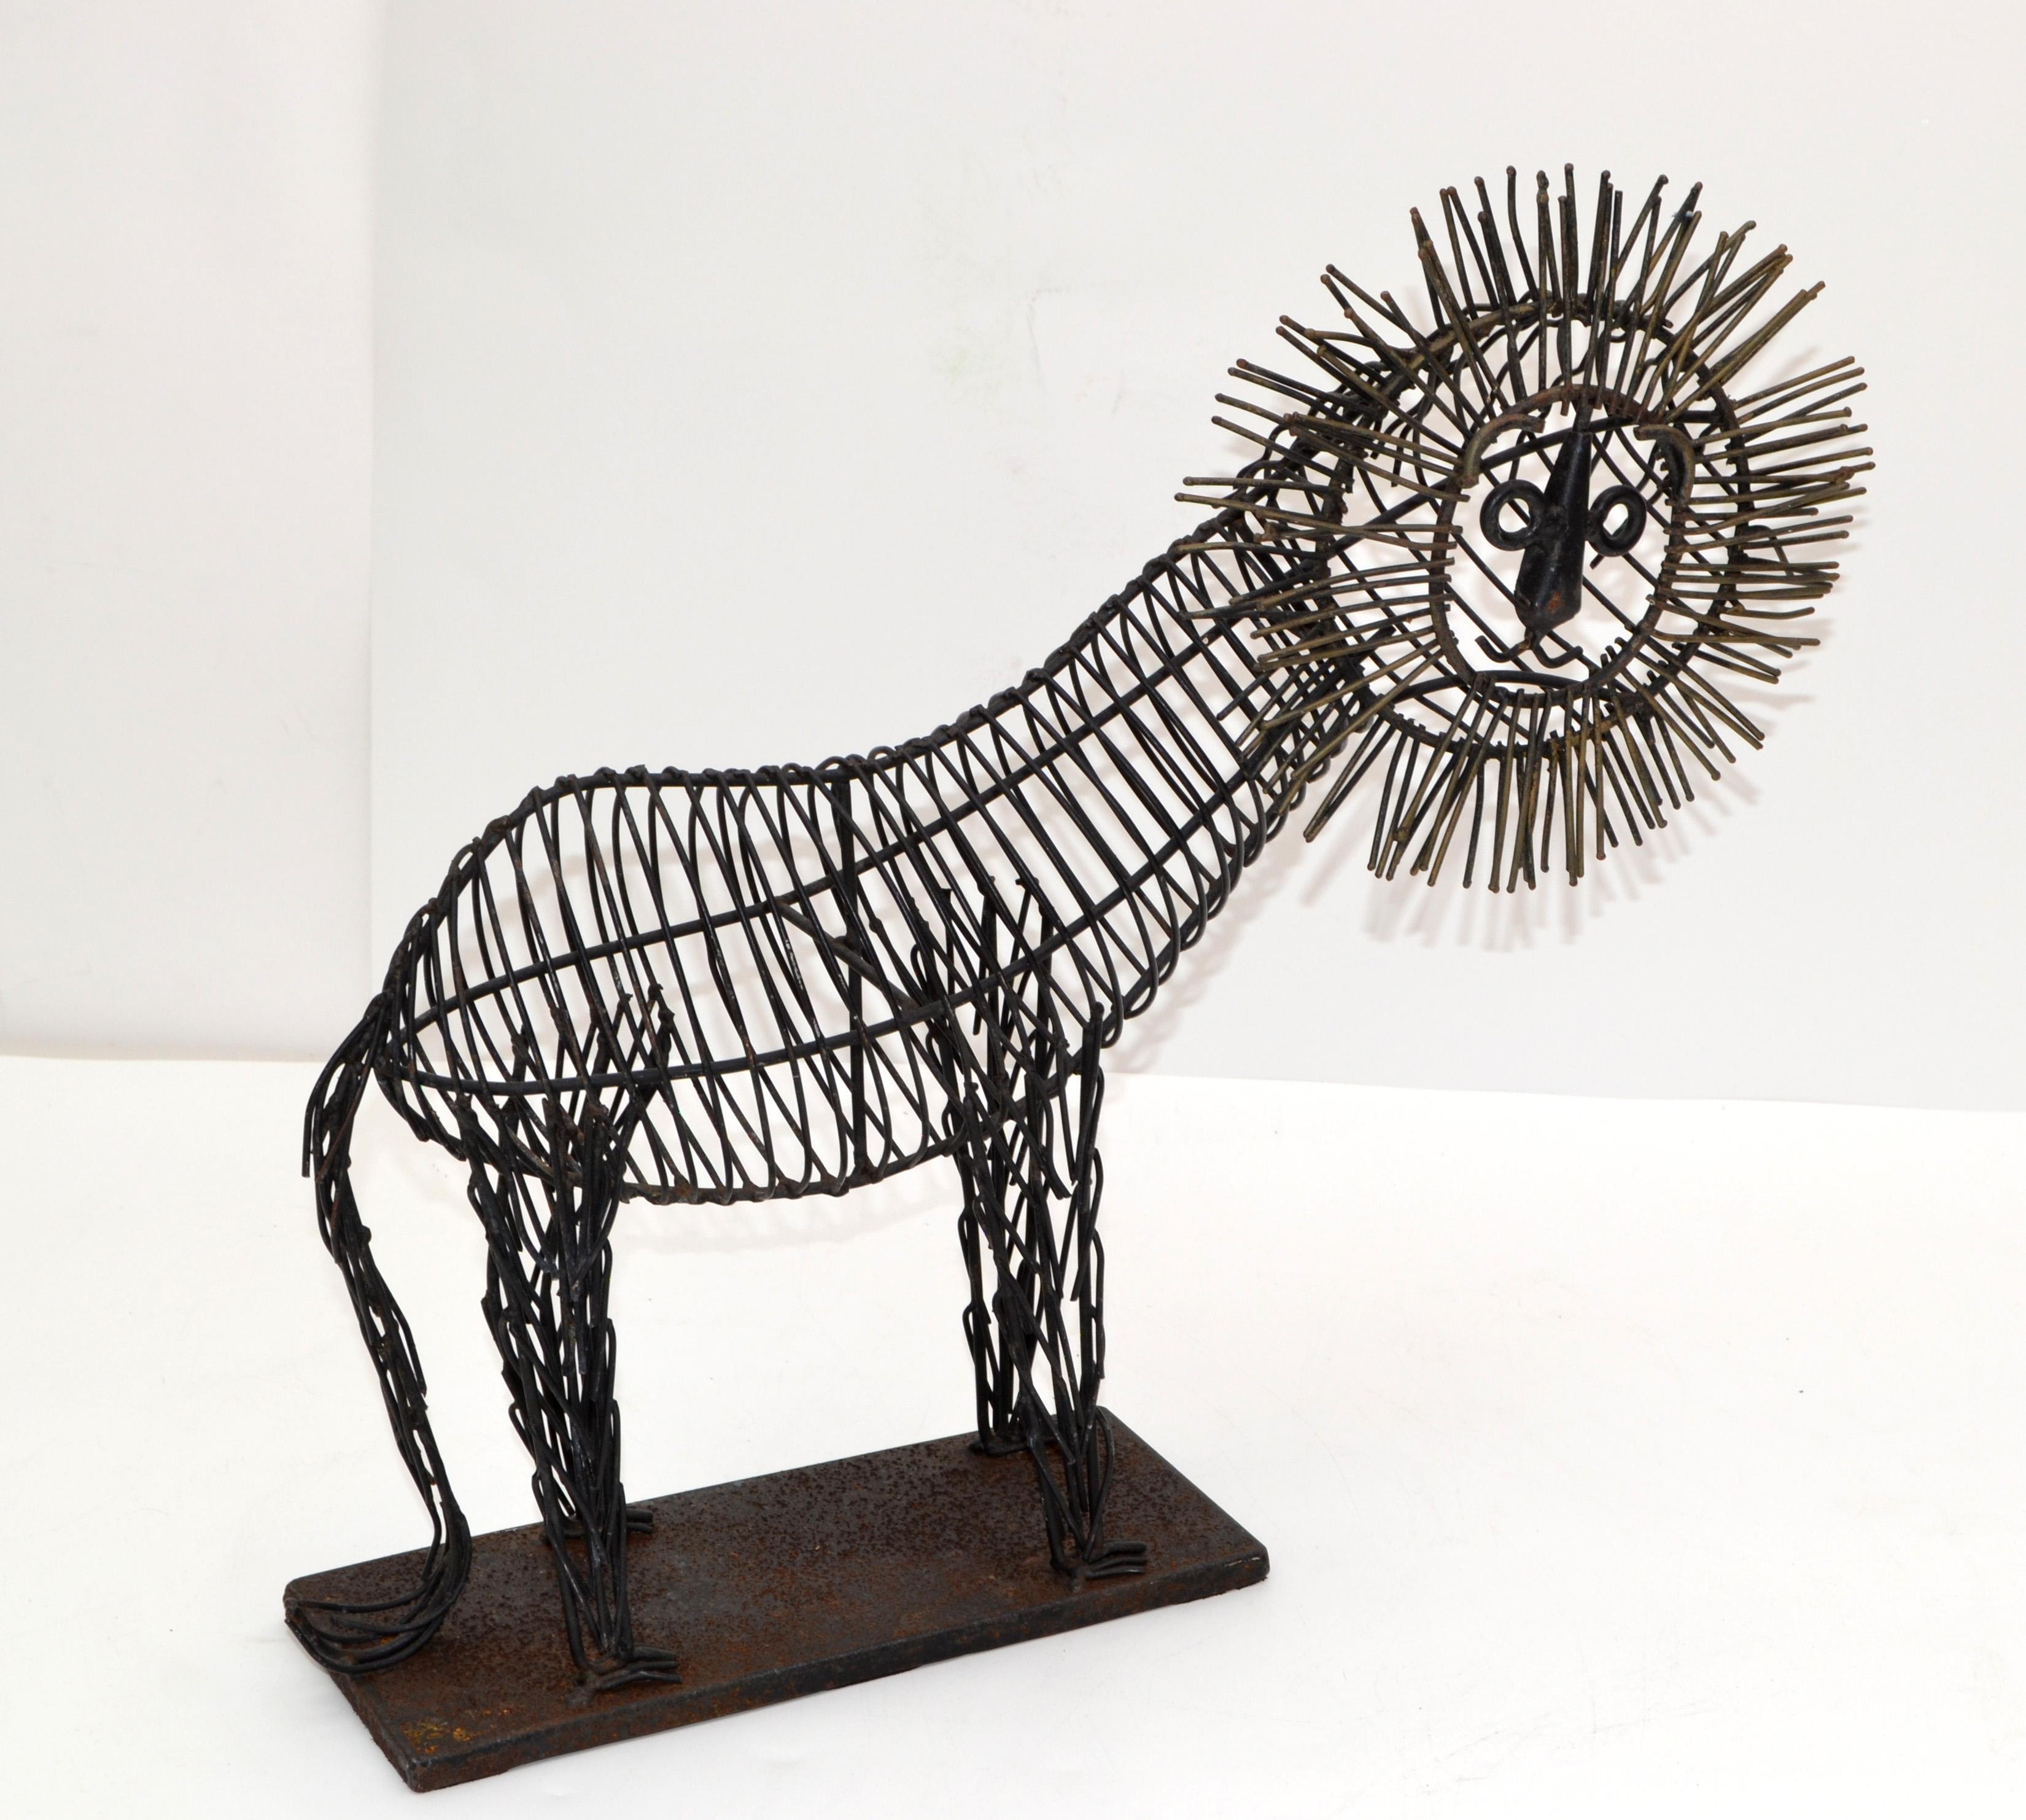 Sculpture de lion en fil de métal, Fine Art, sculpture animalière.
Le lion est monté sur une base métallique.
Couverture en feutre en dessous.
  